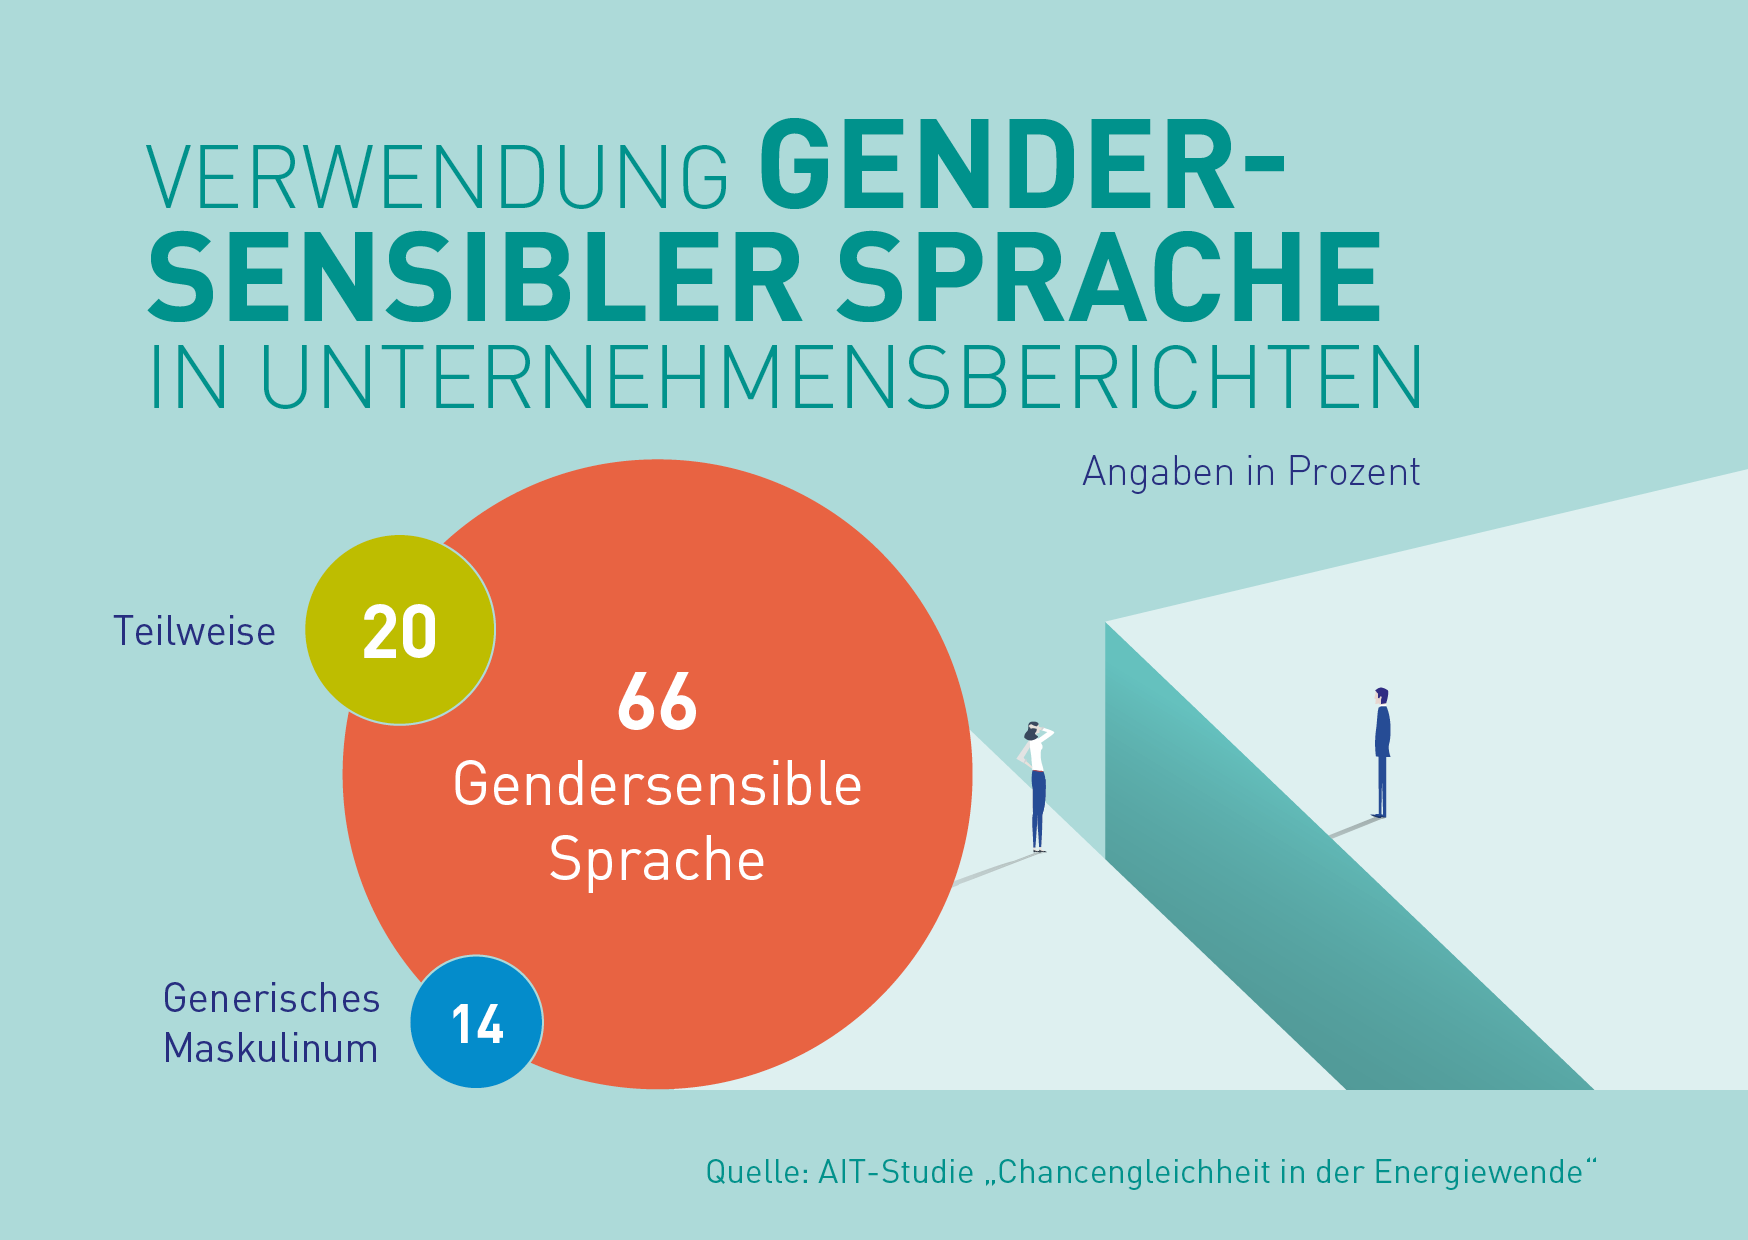 Verwendung gendersensibler Sprache in Unternehmensberichten. Angaben in Prozent. 66% verwendet gendersensible Sprache. 20% Teilweise. 14% generisches Maskulinum.